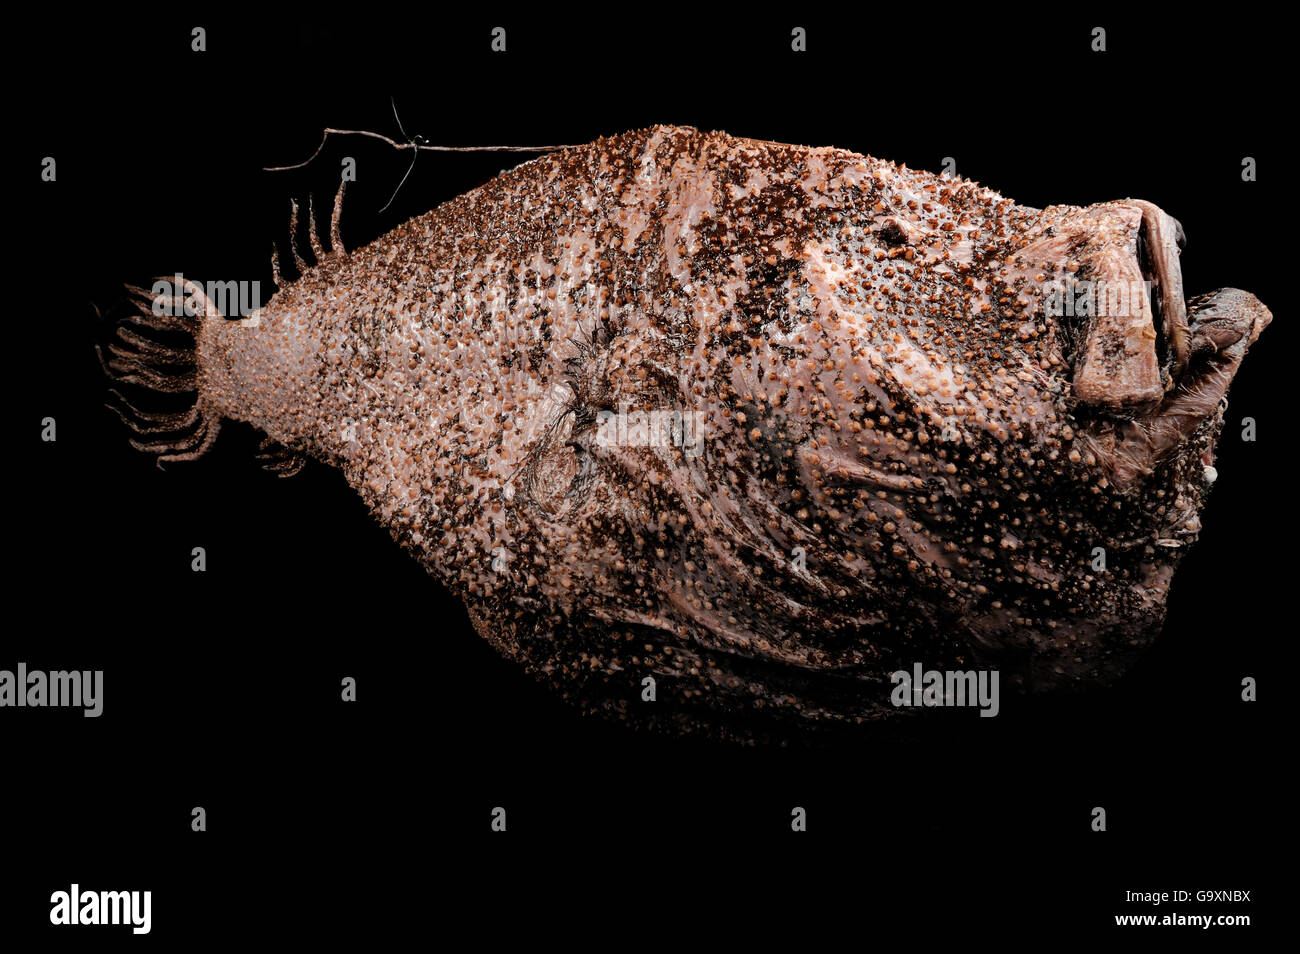 La lotte (Ceratias holboelli) spécimen, de l'océan Atlantique près de l'Islande à une profondeur de 400m. Banque D'Images